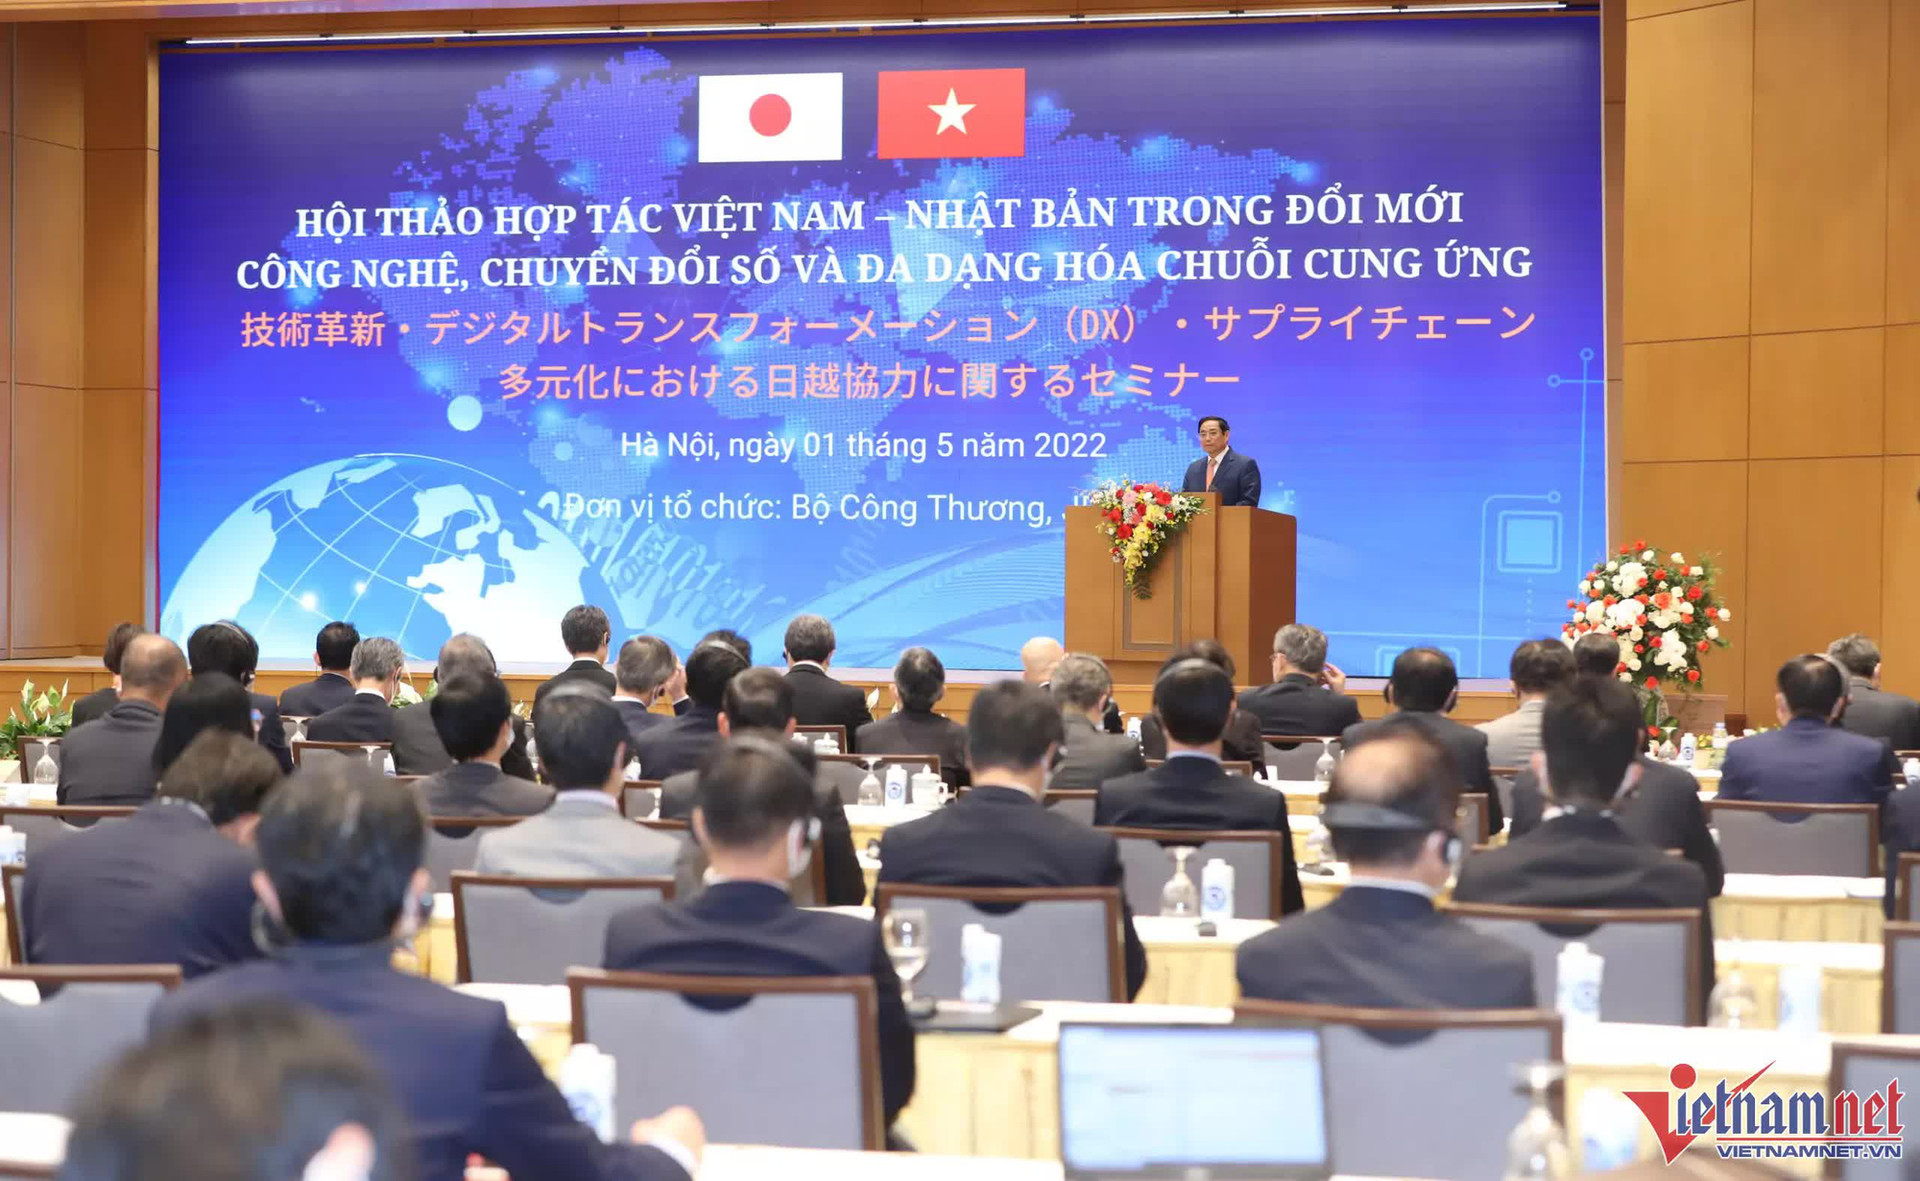 Nhật Bản - Việt Nam kỳ vọng giải quyết các vấn đề kinh tế thông qua chuyển đổi số - Ảnh 2.